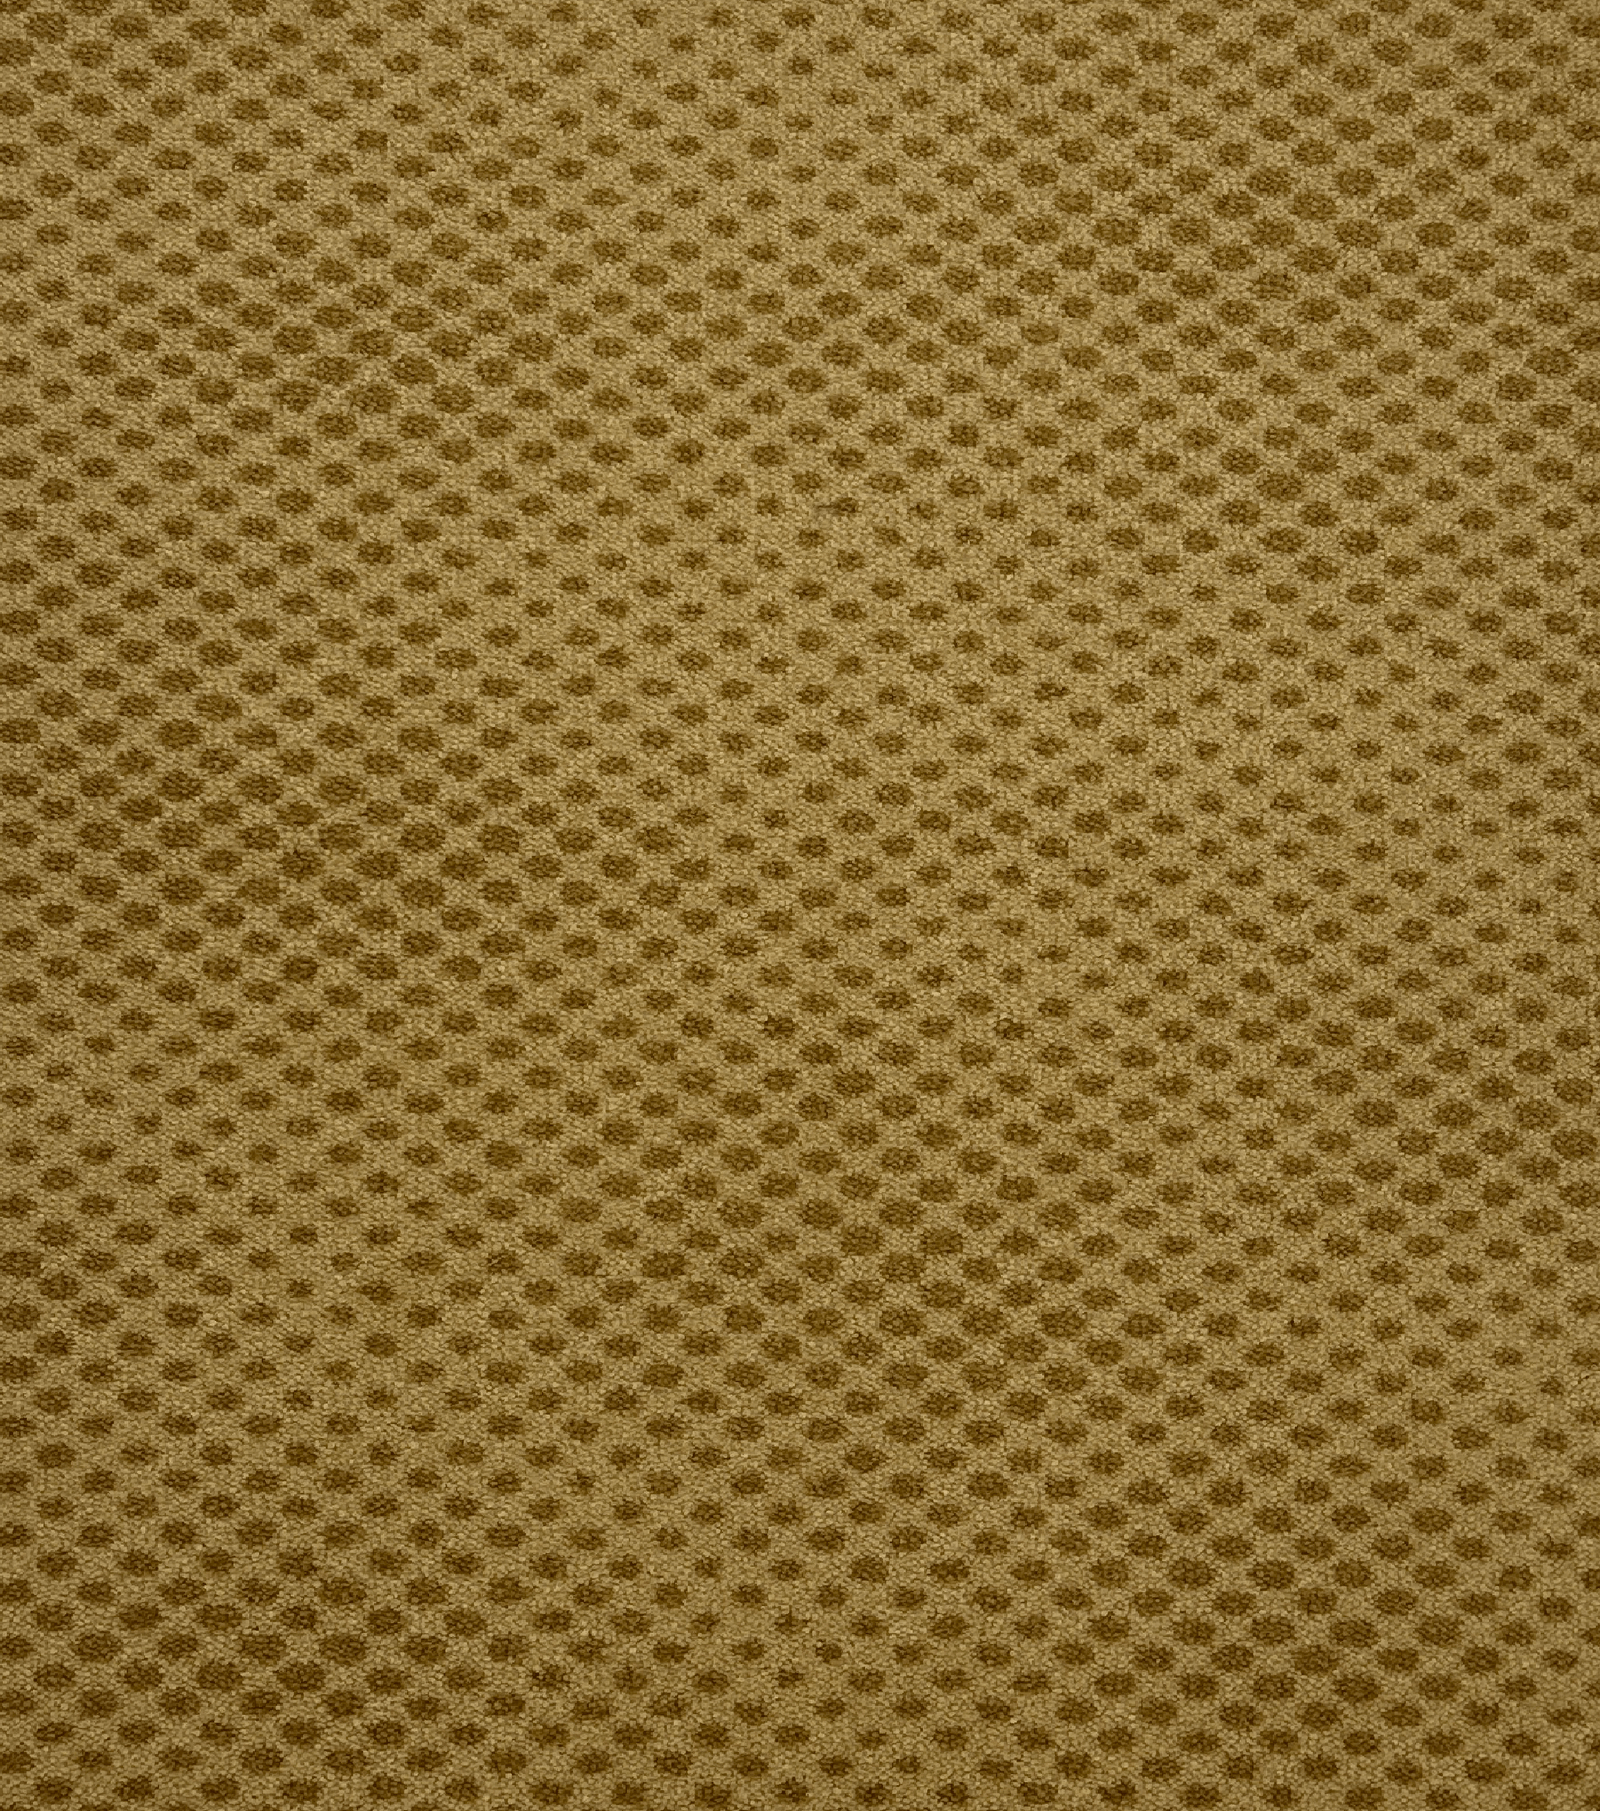 Printed Contract Carpet-EMPORIUM